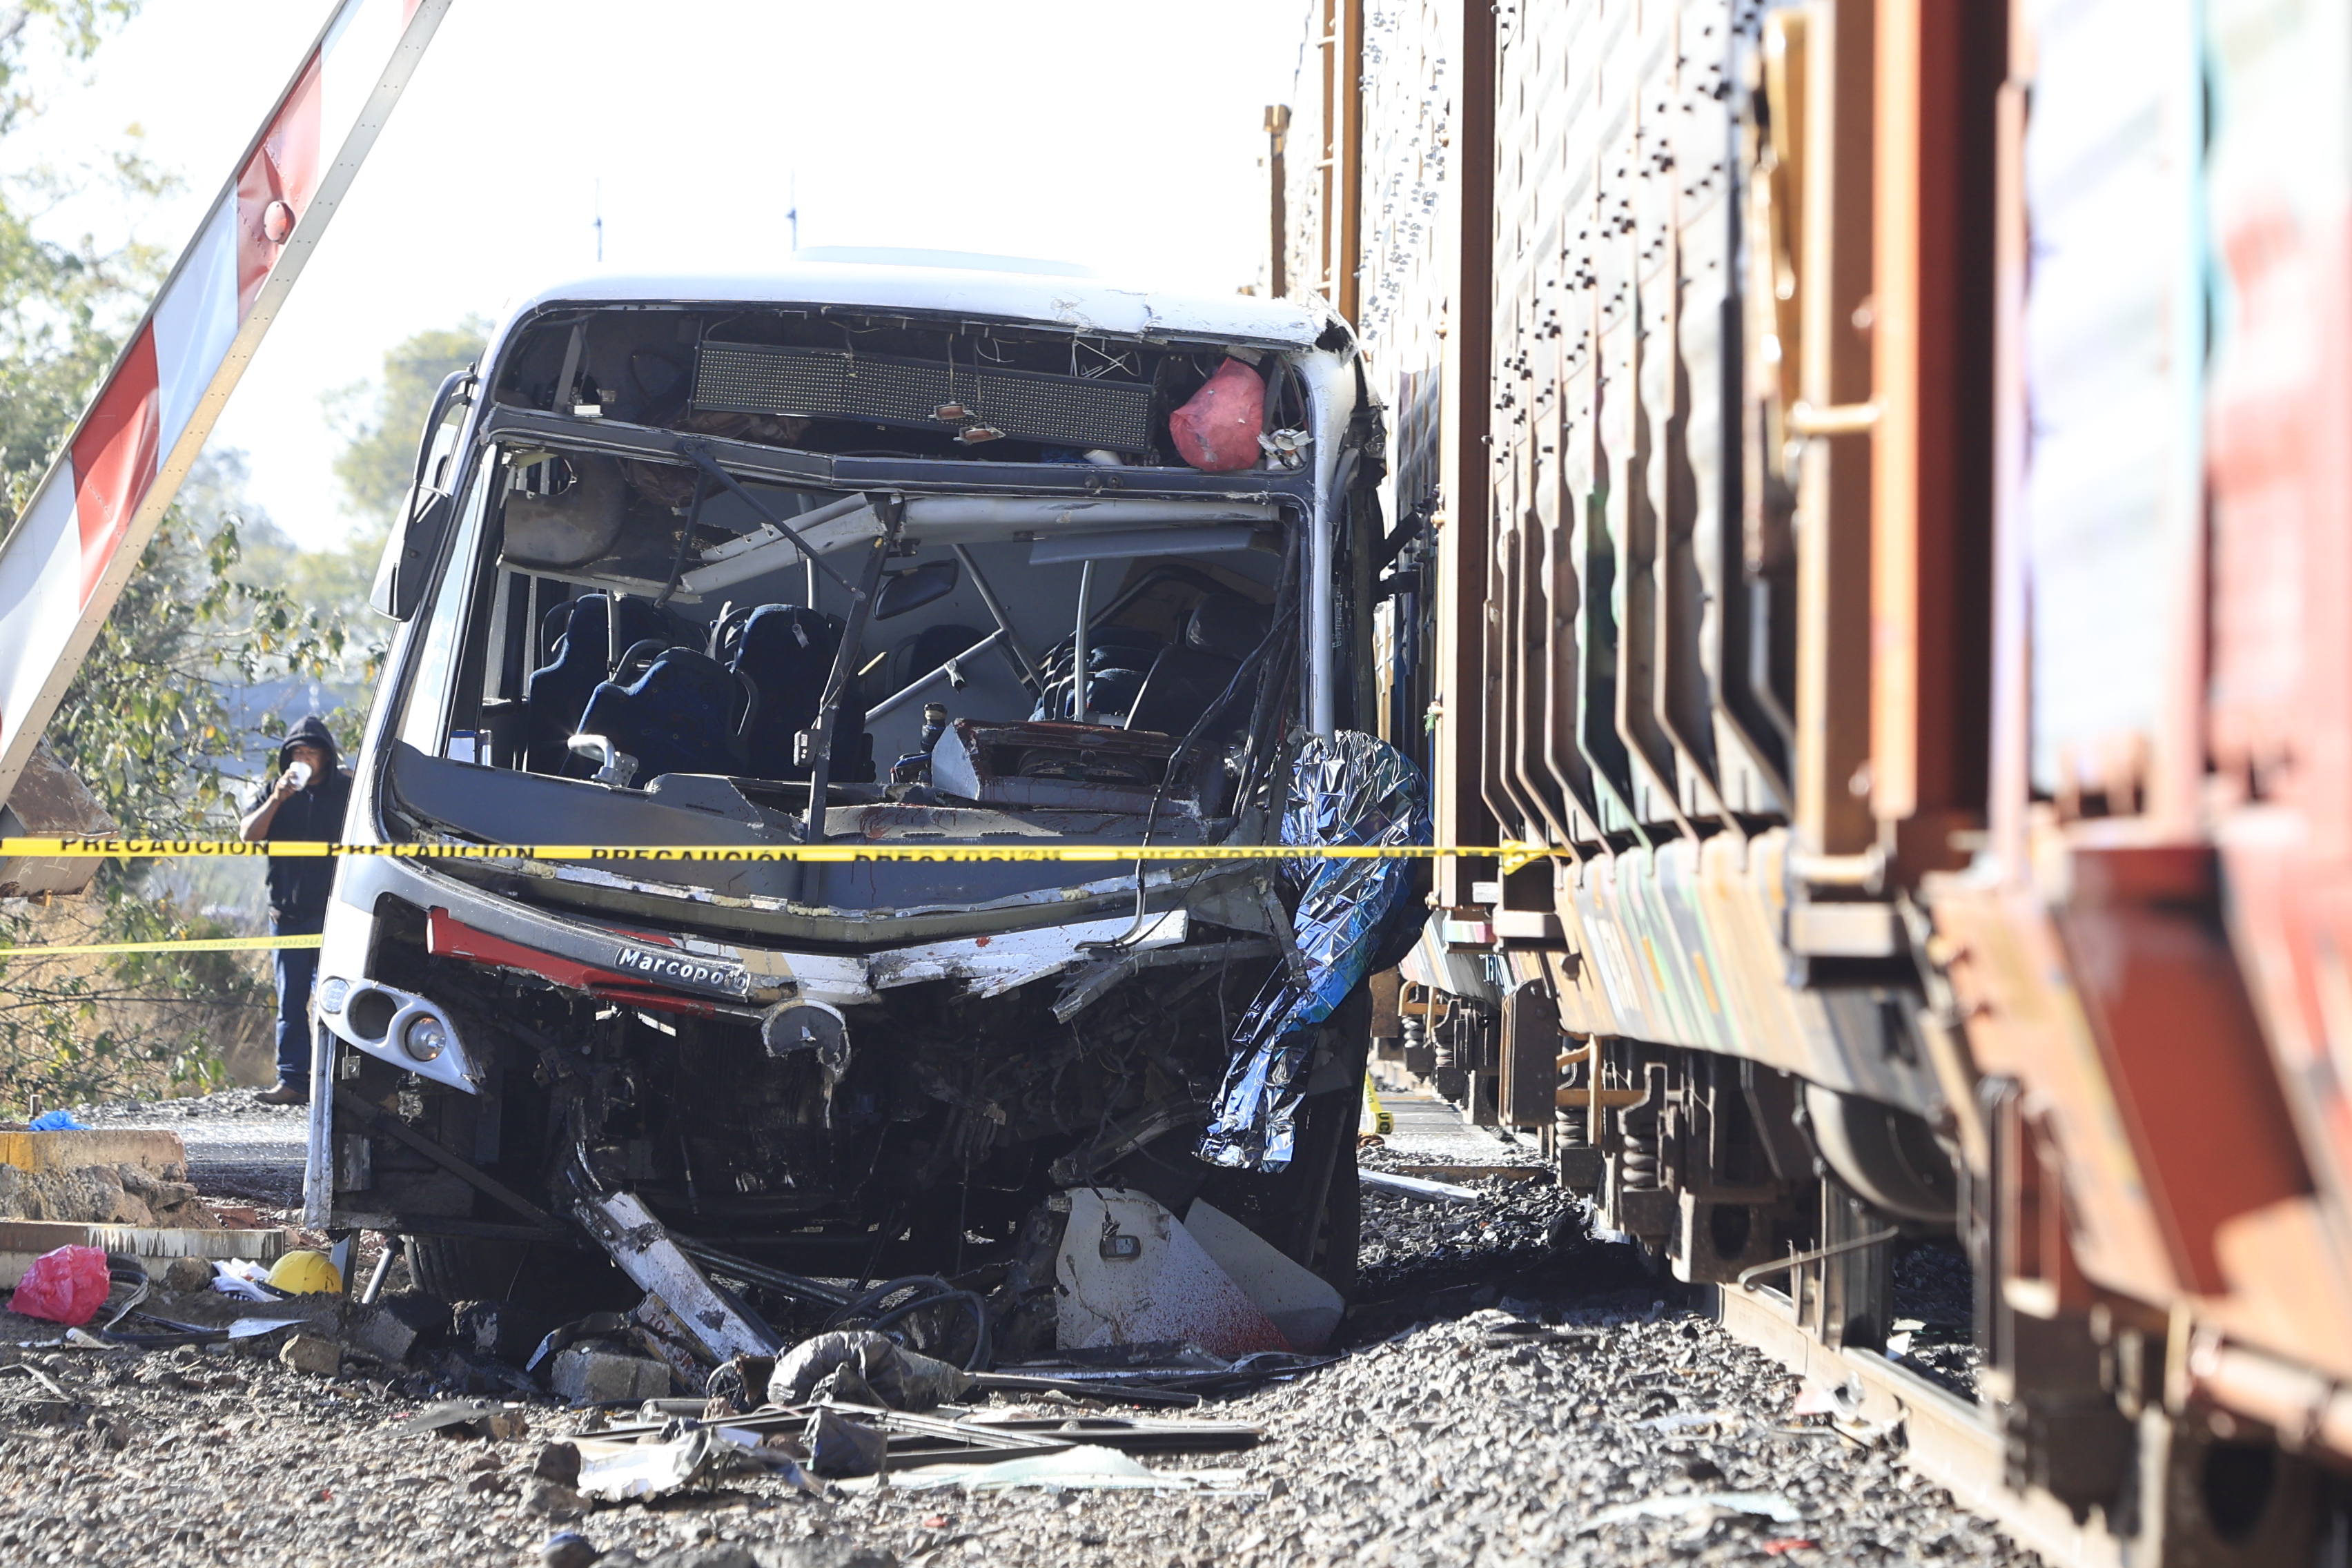 Choque de camión de pasajeros contra tren deja una persona muerta y 17 lesionadas